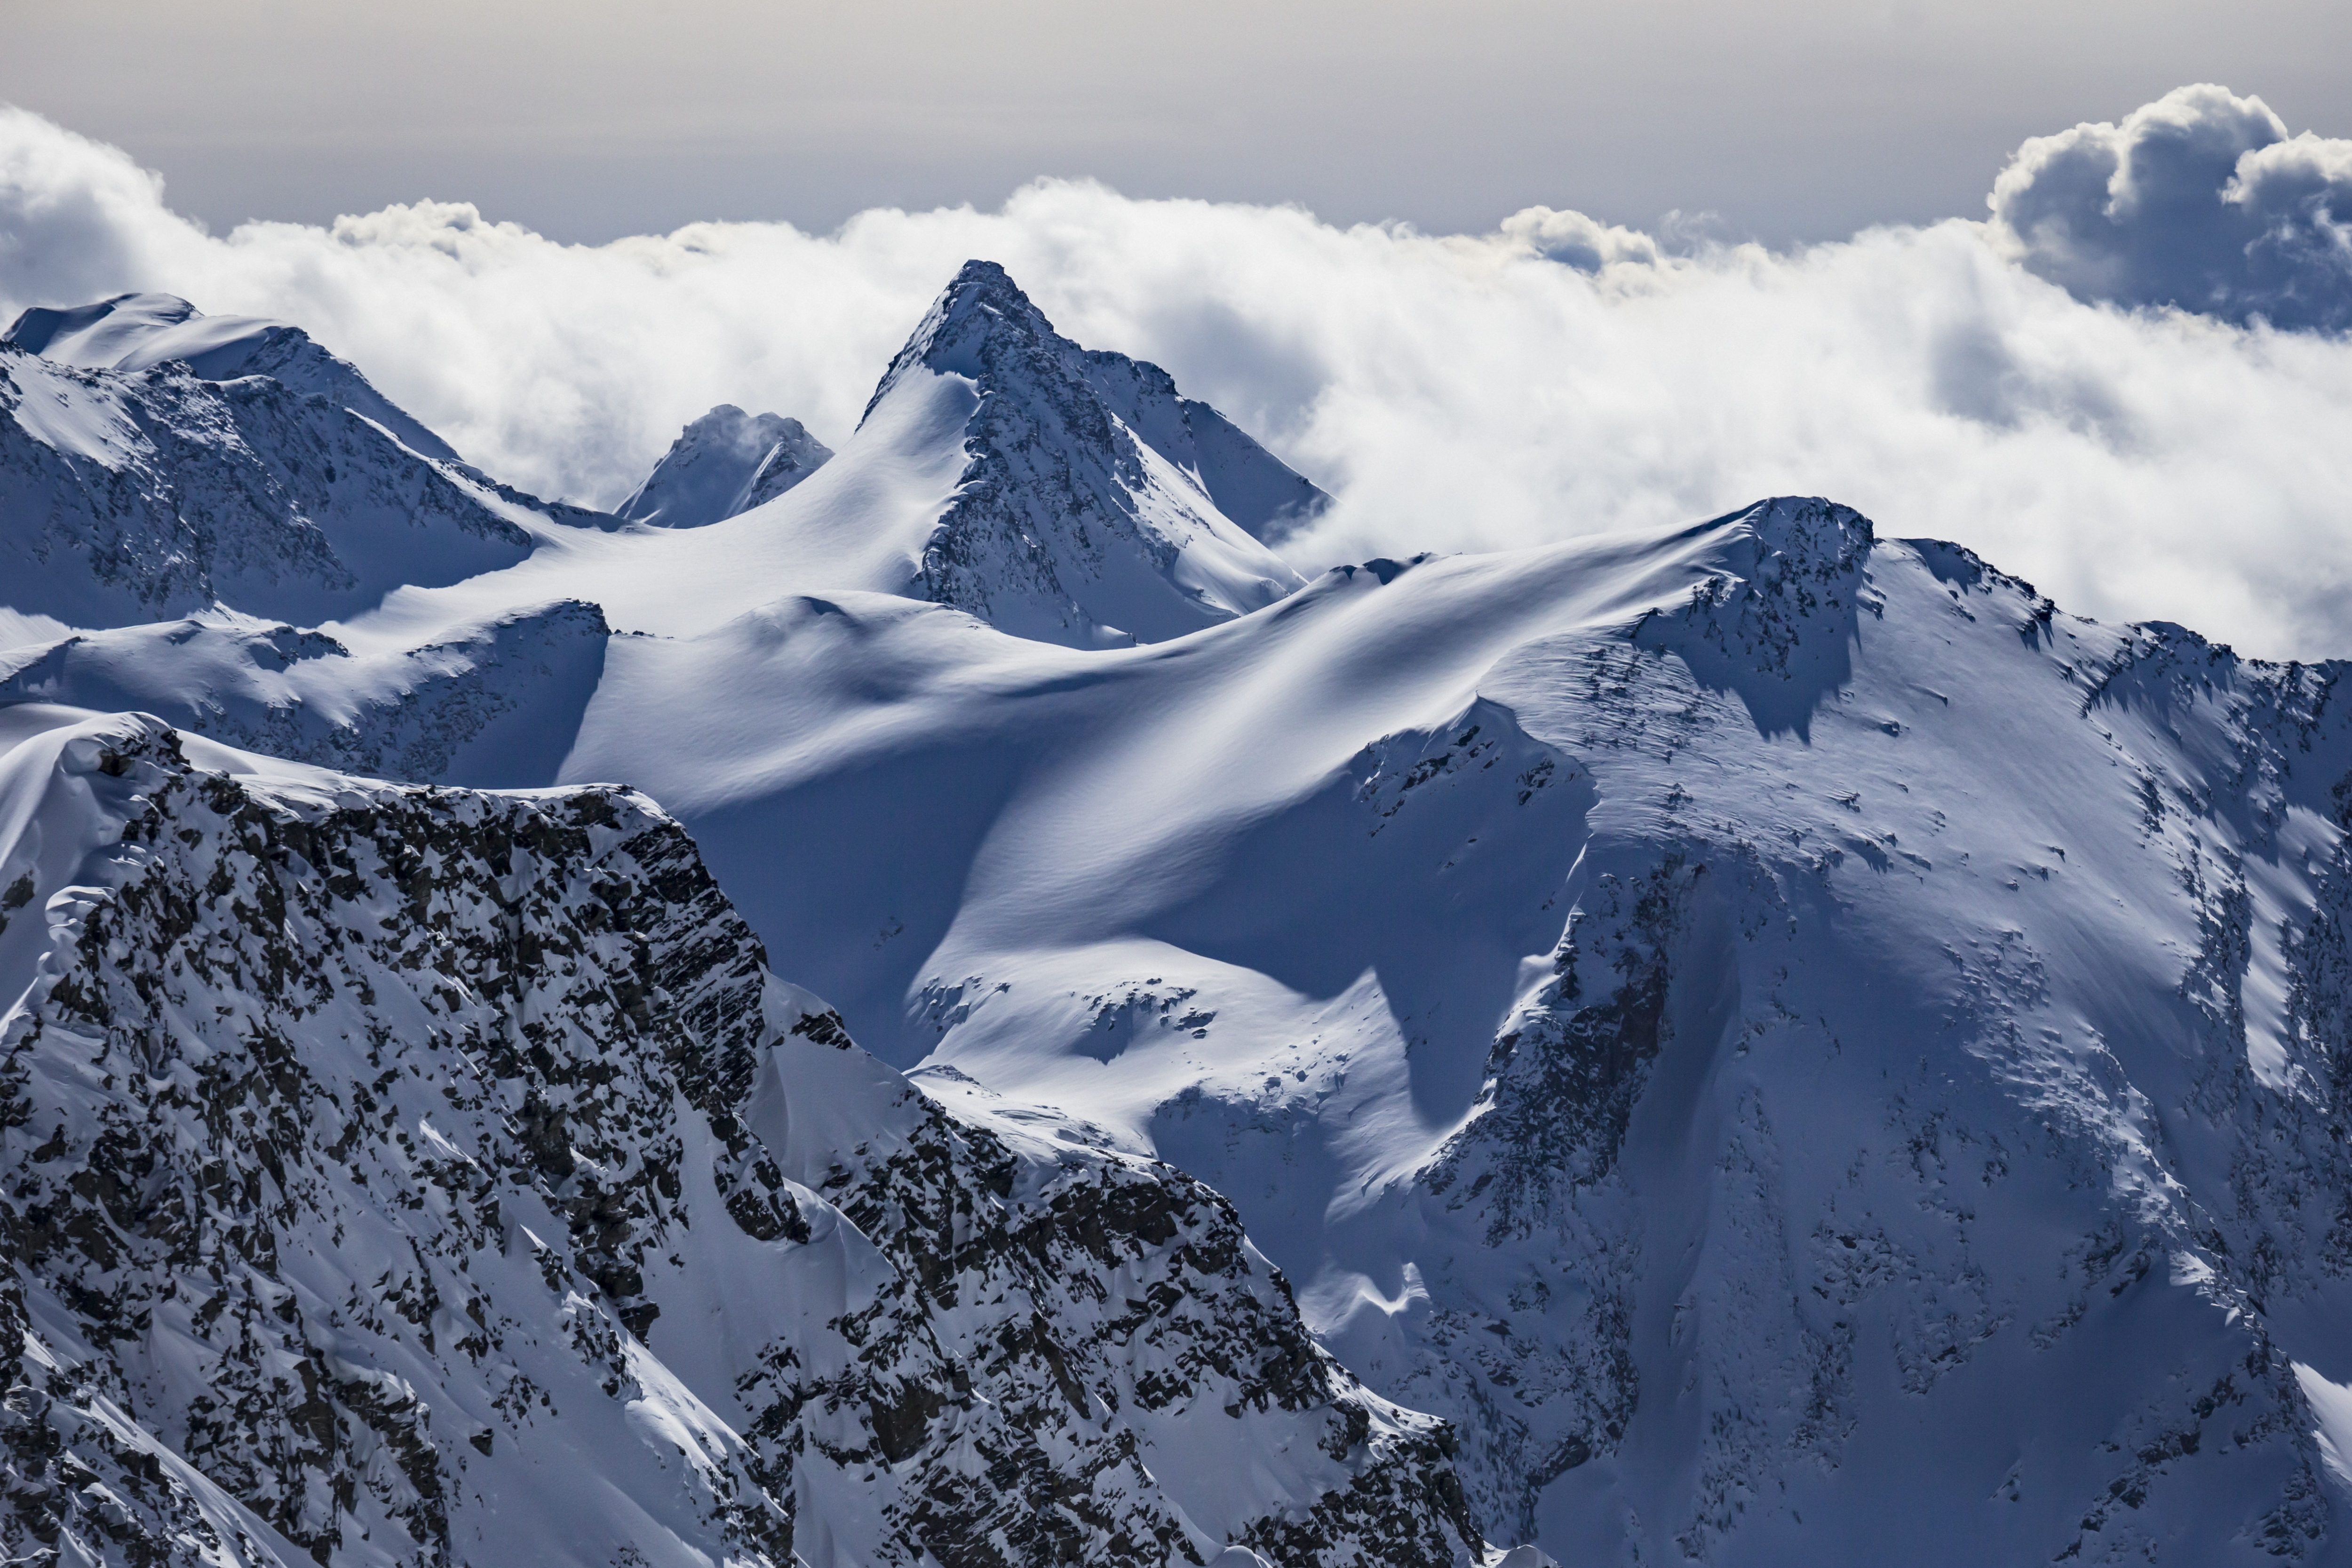 Mountain peaks in Great Canadian Heli-Skiing terrain